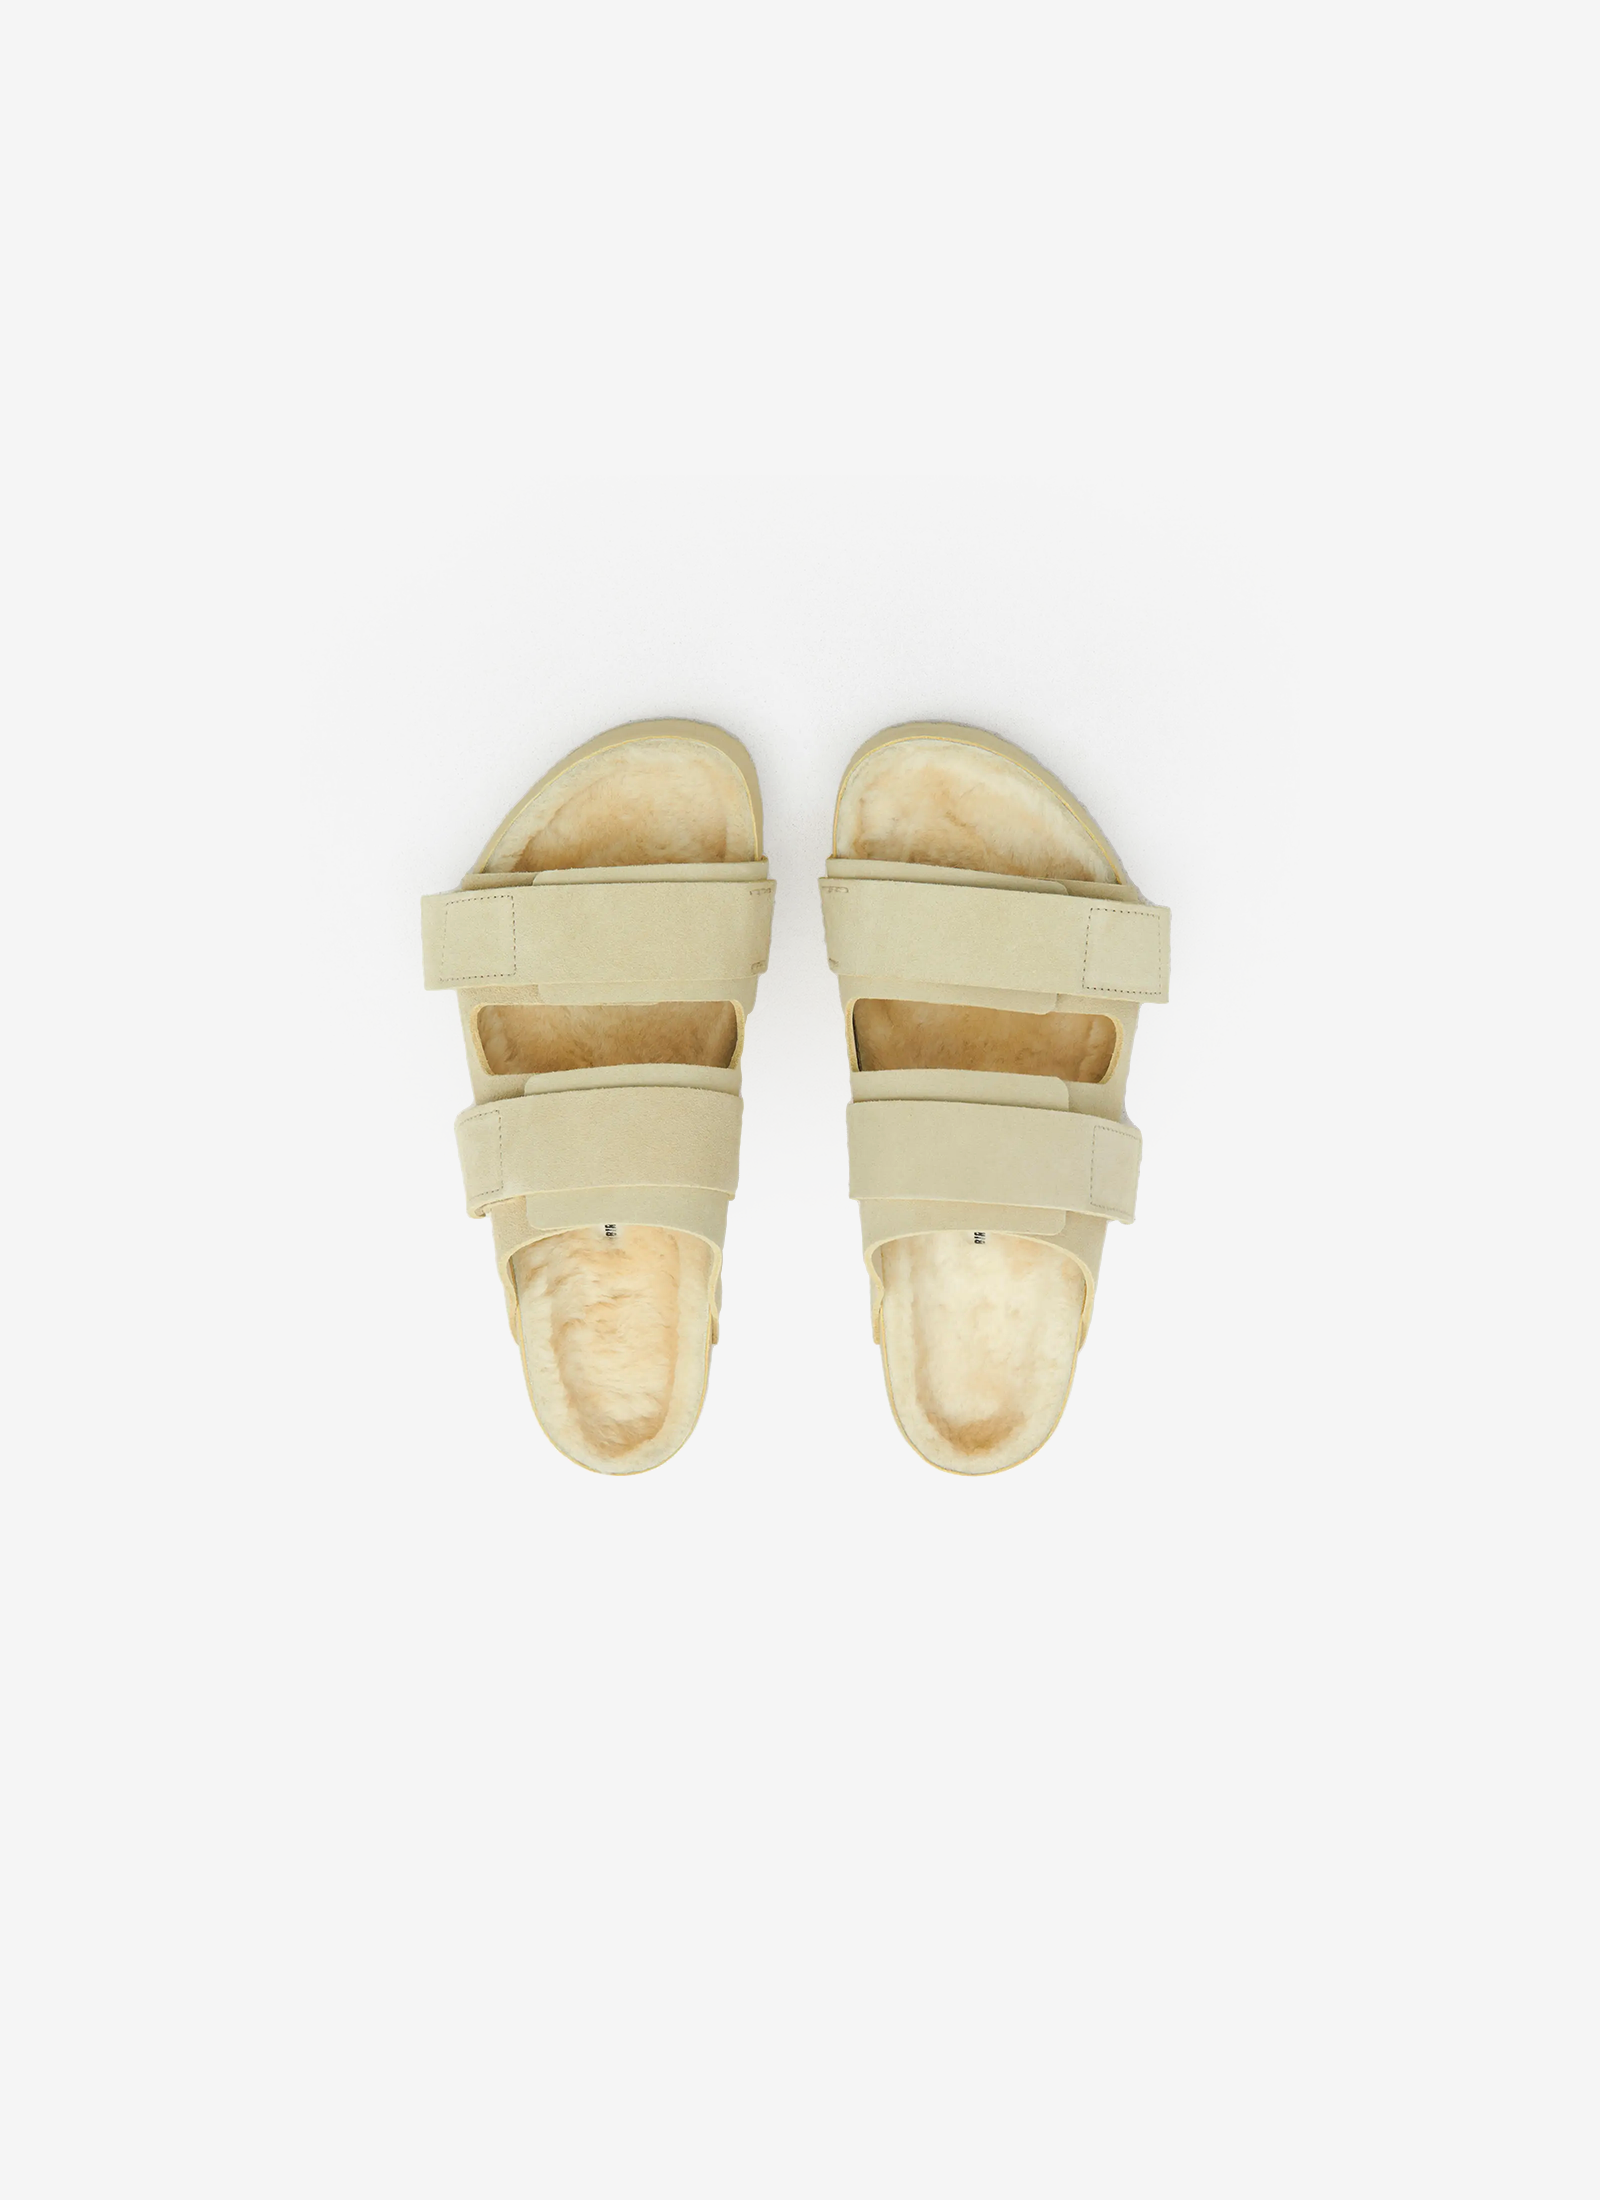 Tekla x Birkenstock - Uji Shoes in Straw